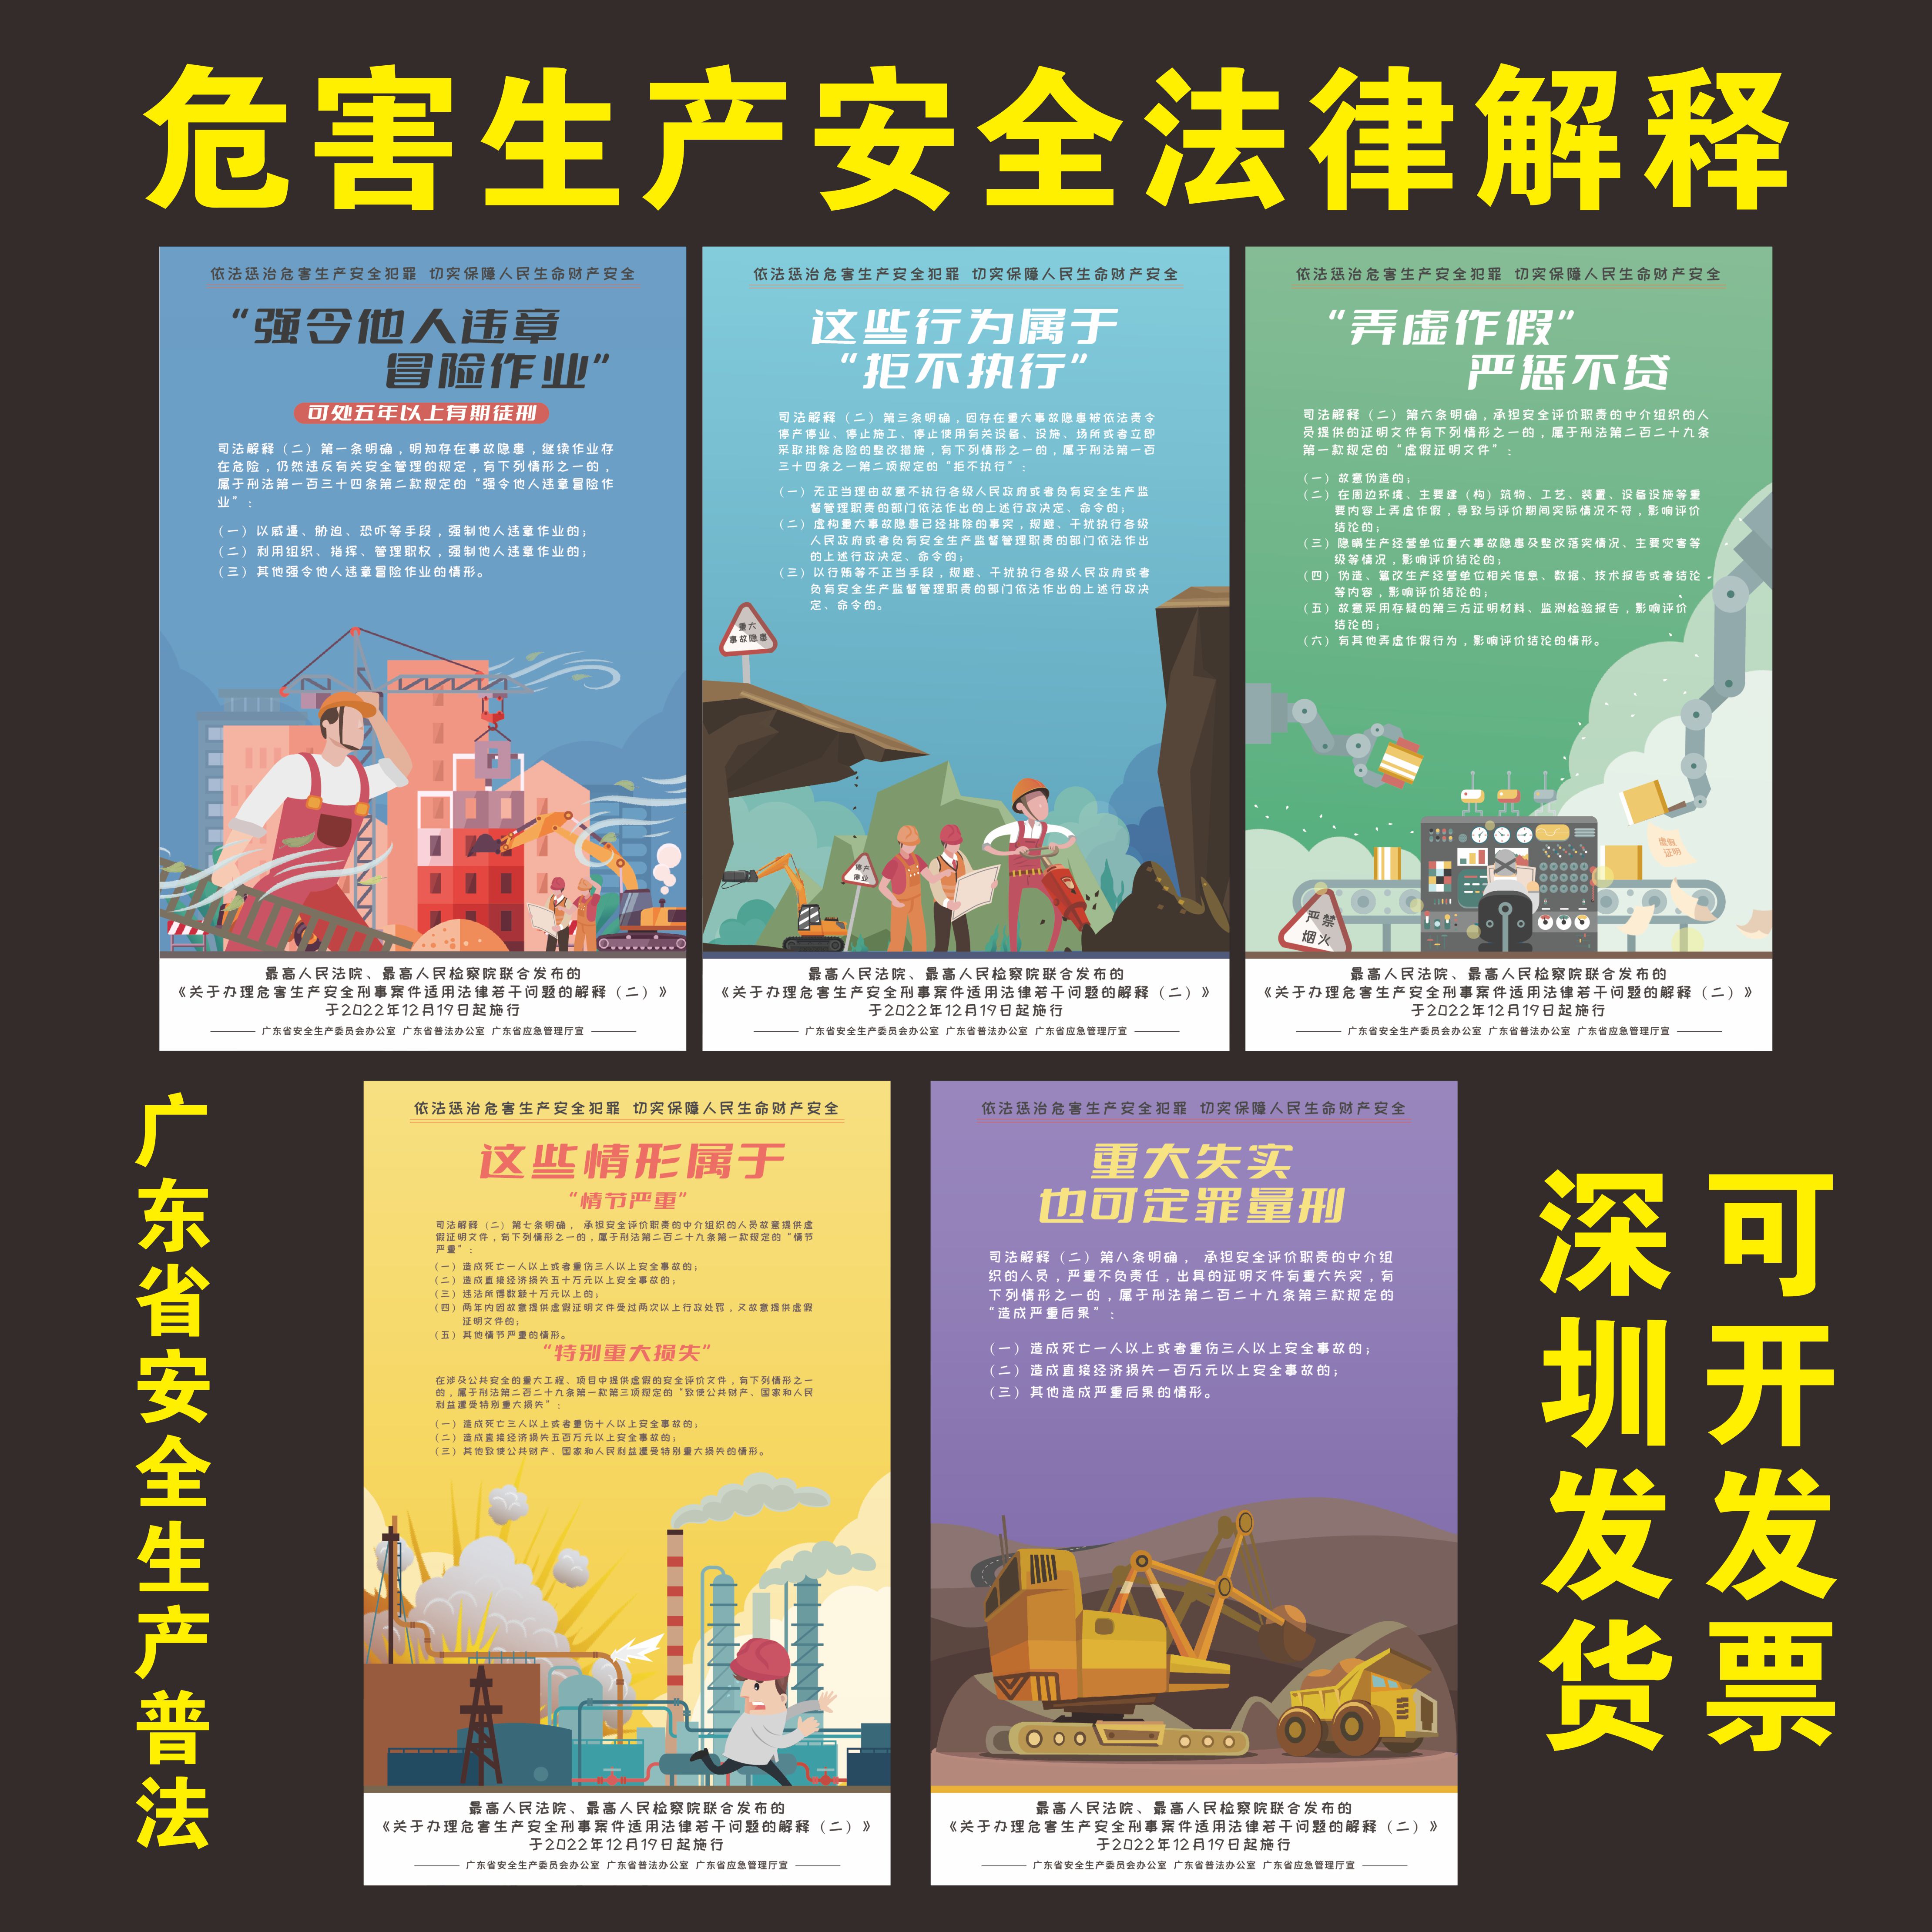 广东省危害生产安全部分法律问题解释宣传海报安全生产普法宣传画